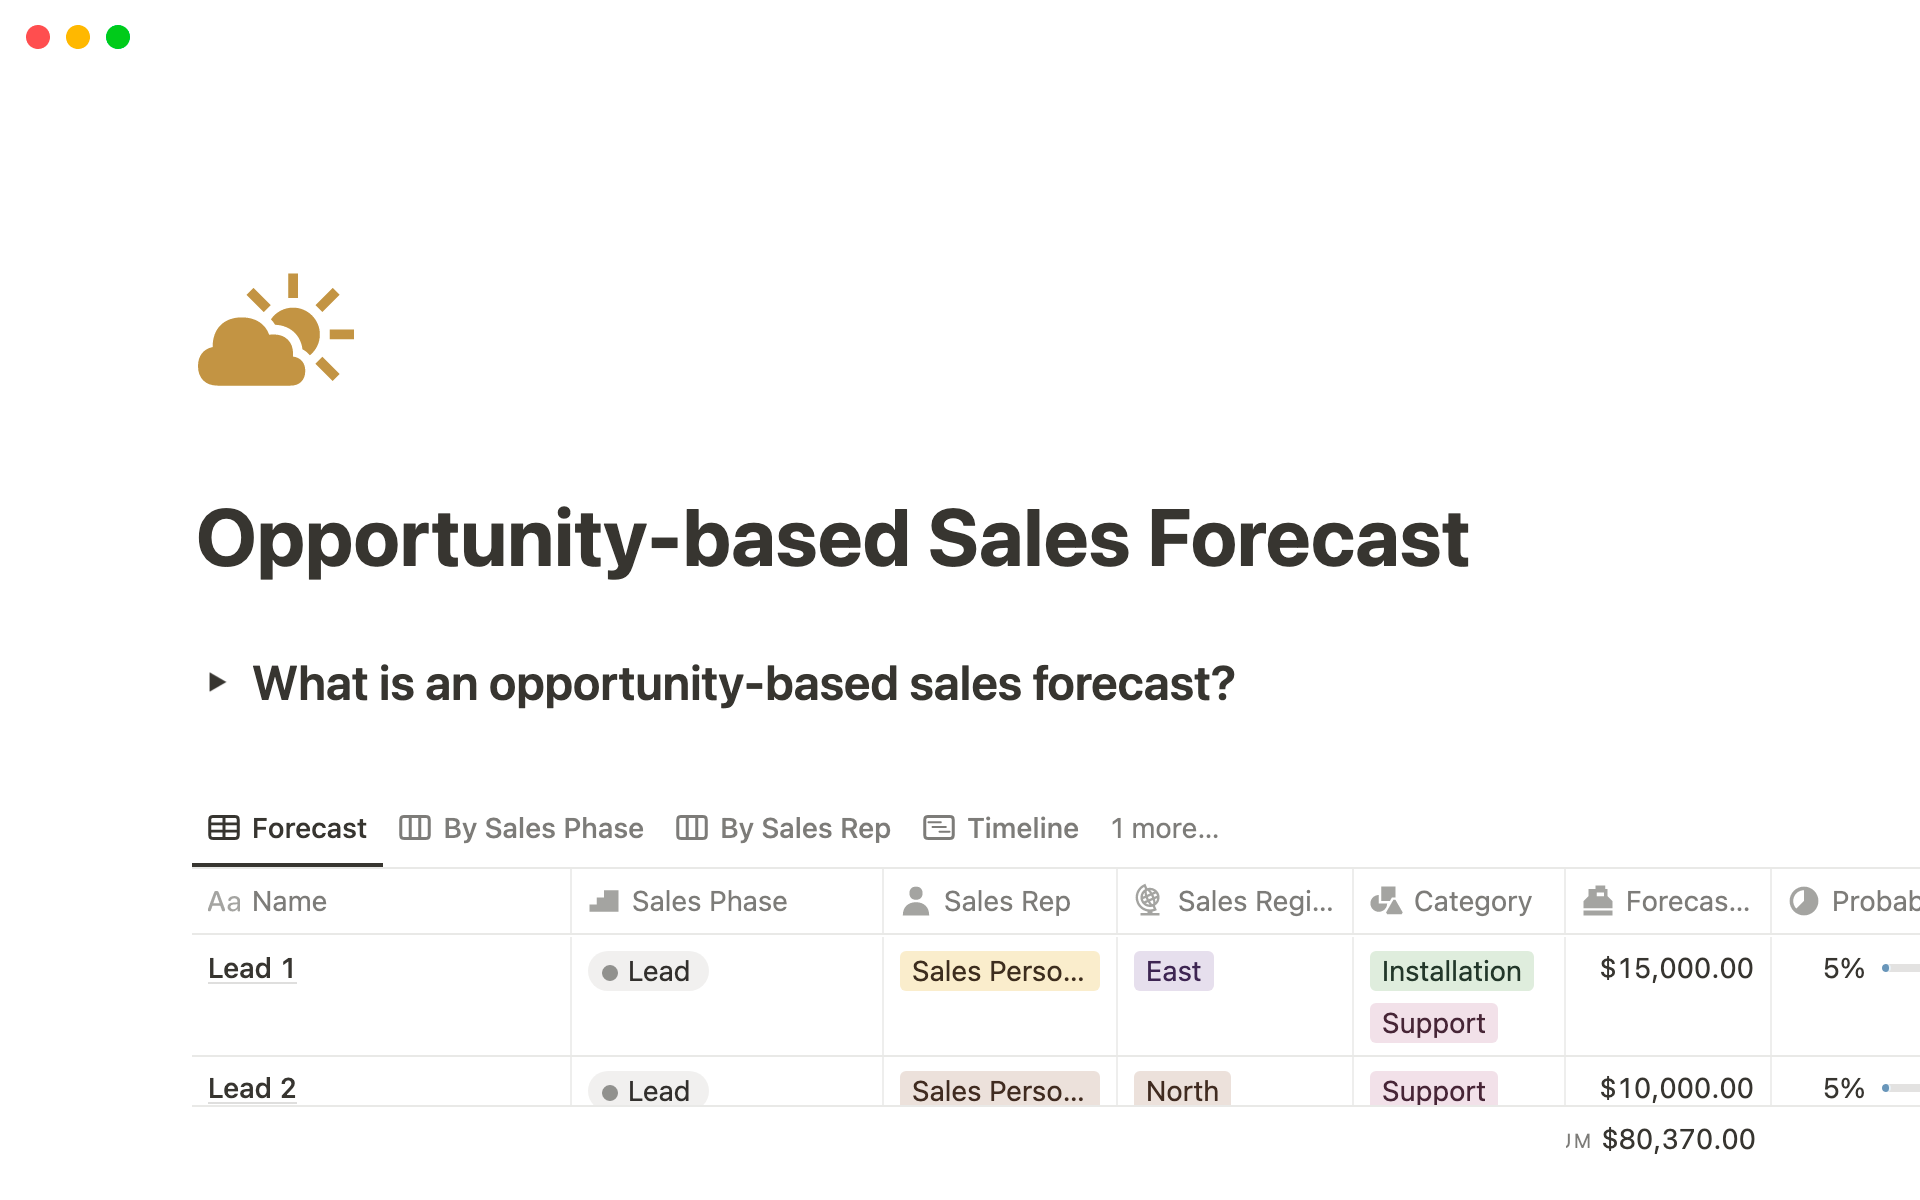 Uma prévia do modelo para Opportunity-based Sales Forecast